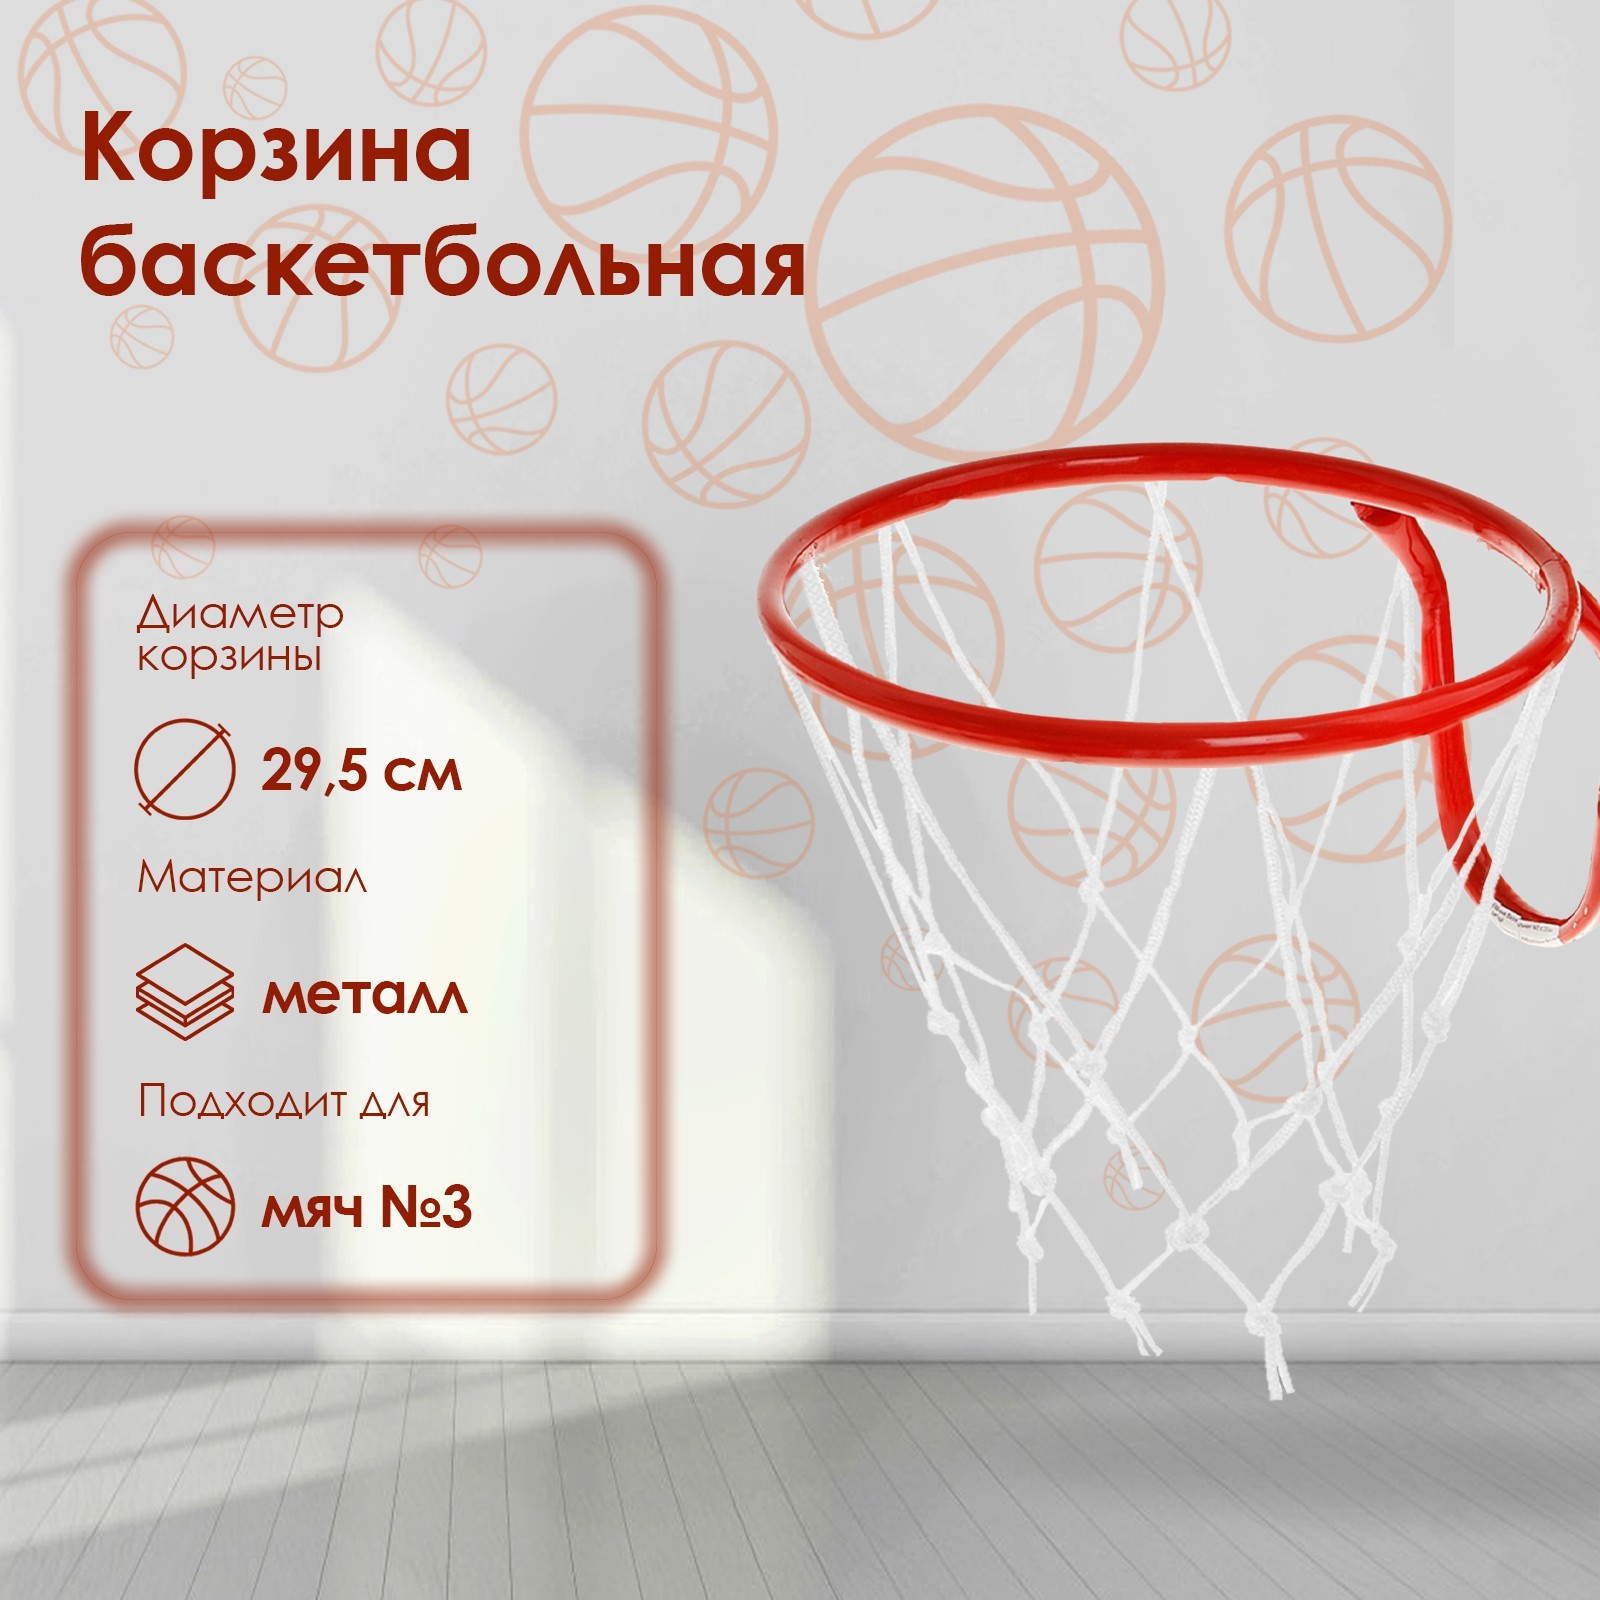 Корзина баскетбольная №3, d=295 мм, с сеткой 895271